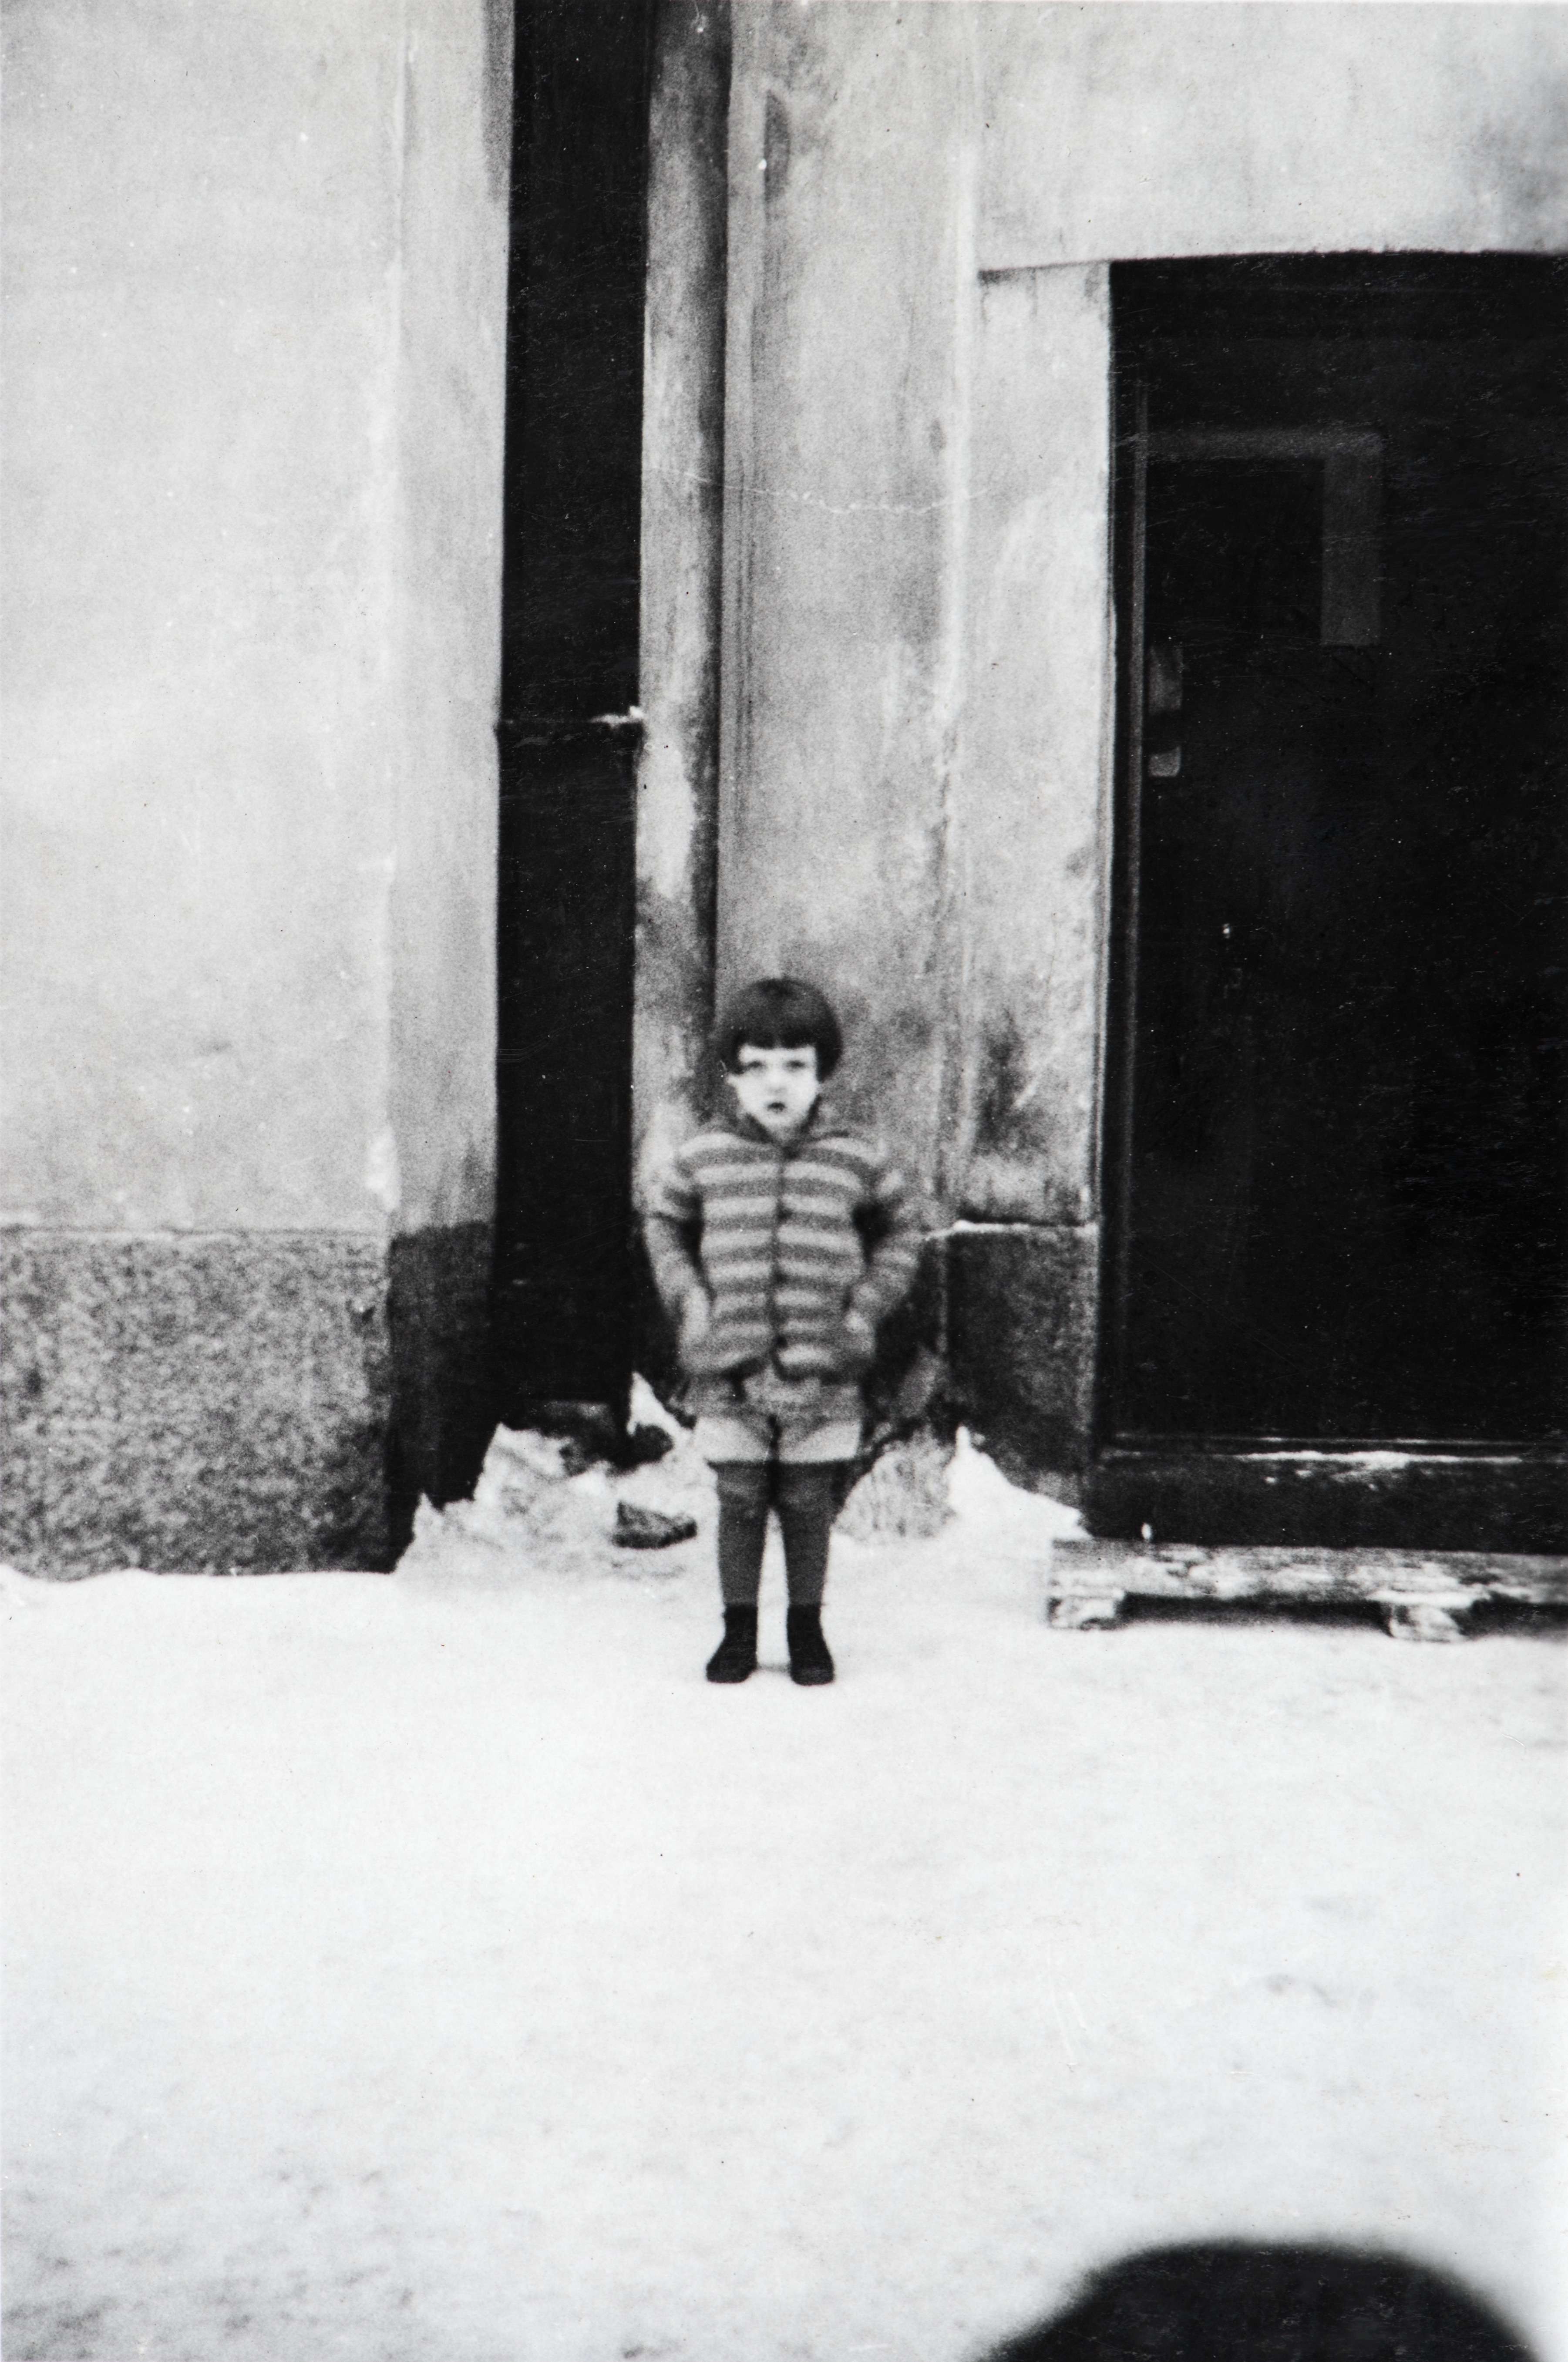 Agricolankatu 15, Kallion paloasema. Lapsi seisoo Kallion paloaseman oven edessä. Kuvassa oleva asemarakennus oli paikalla vuosina 1914-1930. Aseman tilalle rakennettiin uusi paloasema vuosina 1930-1932.